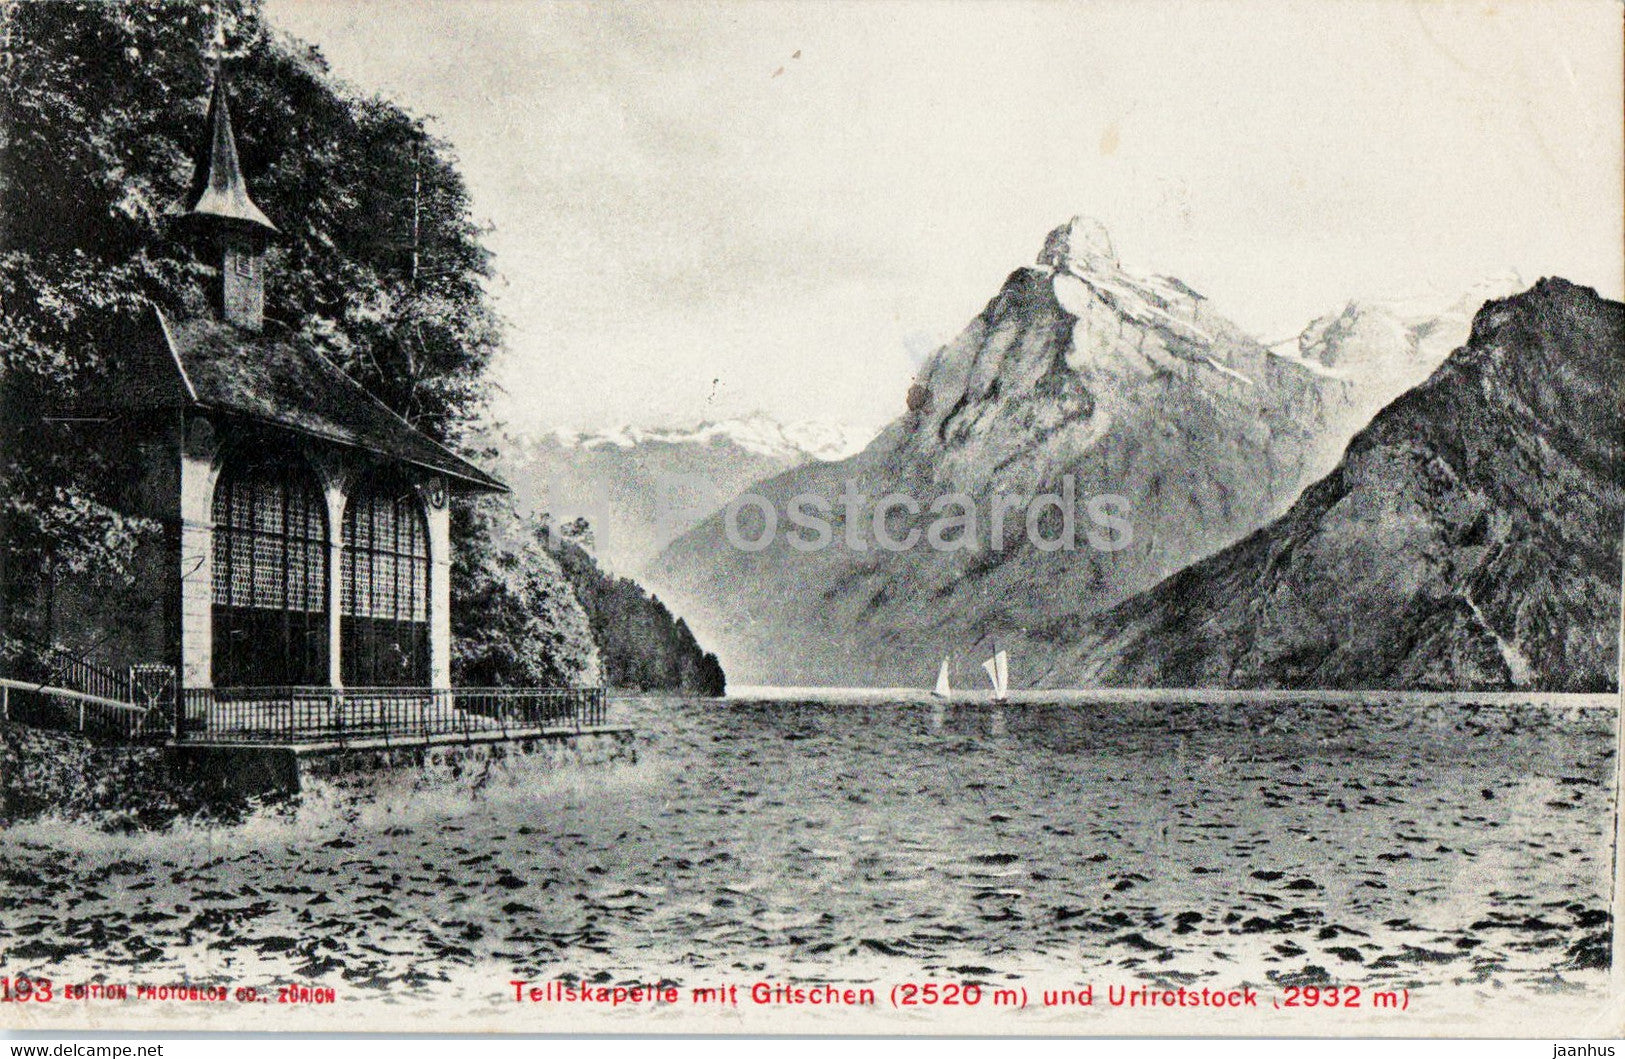 Tellskapelle mit Gitschen 2320 m und Urirotstock 2932 m - 193 - old postcard - 1907 - Switzerland - used - JH Postcards